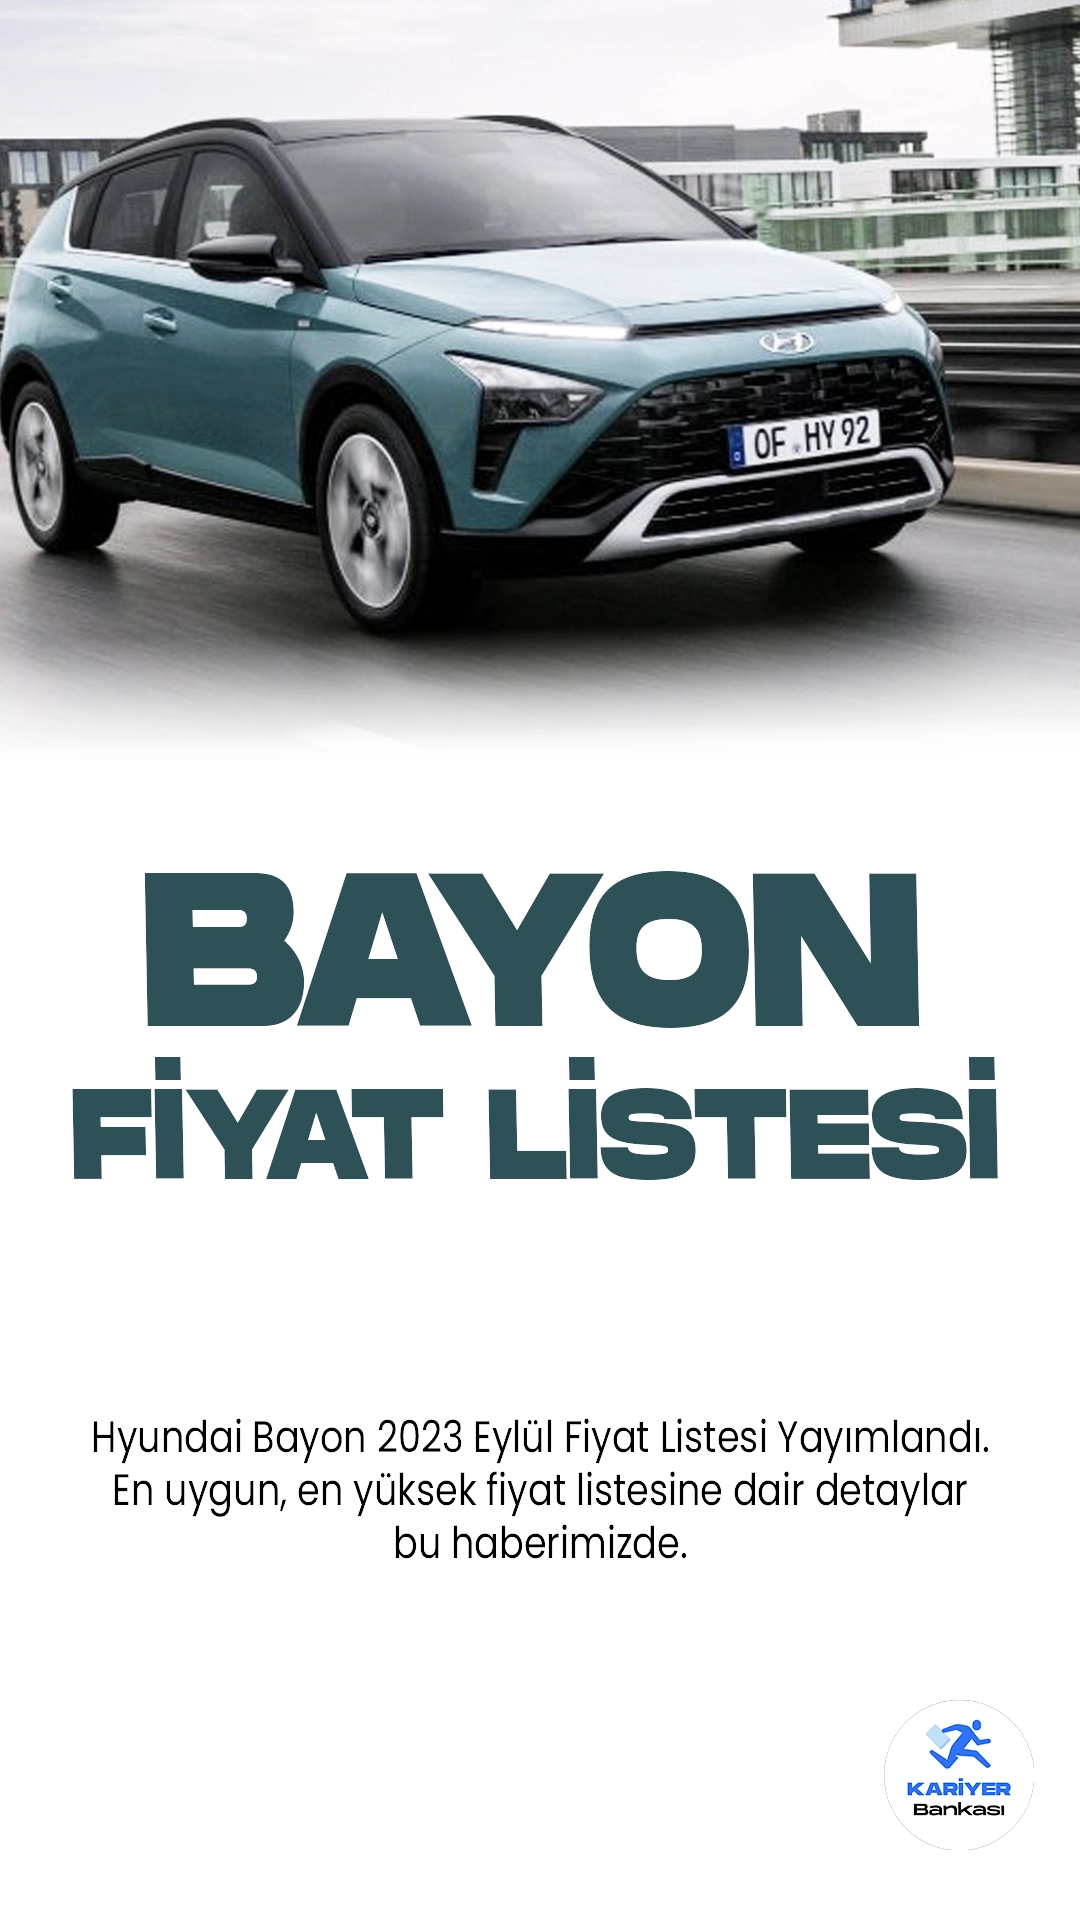 Hyundai Bayon 2023 Eylül Fiyat Listesi Yayımlandı. Hyundai, kompakt SUV segmentine etkileyici bir katkı sunmaya devam ediyor ve yeni Bayon modeliyle otomobil severleri büyülemeye hazırlanıyor. Bayon, şık ve dinamik tasarımıyla dikkat çekiyor. İç mekanında ferah bir atmosfer sunan araç, yüksek kaliteli malzemelerle donatılmış.